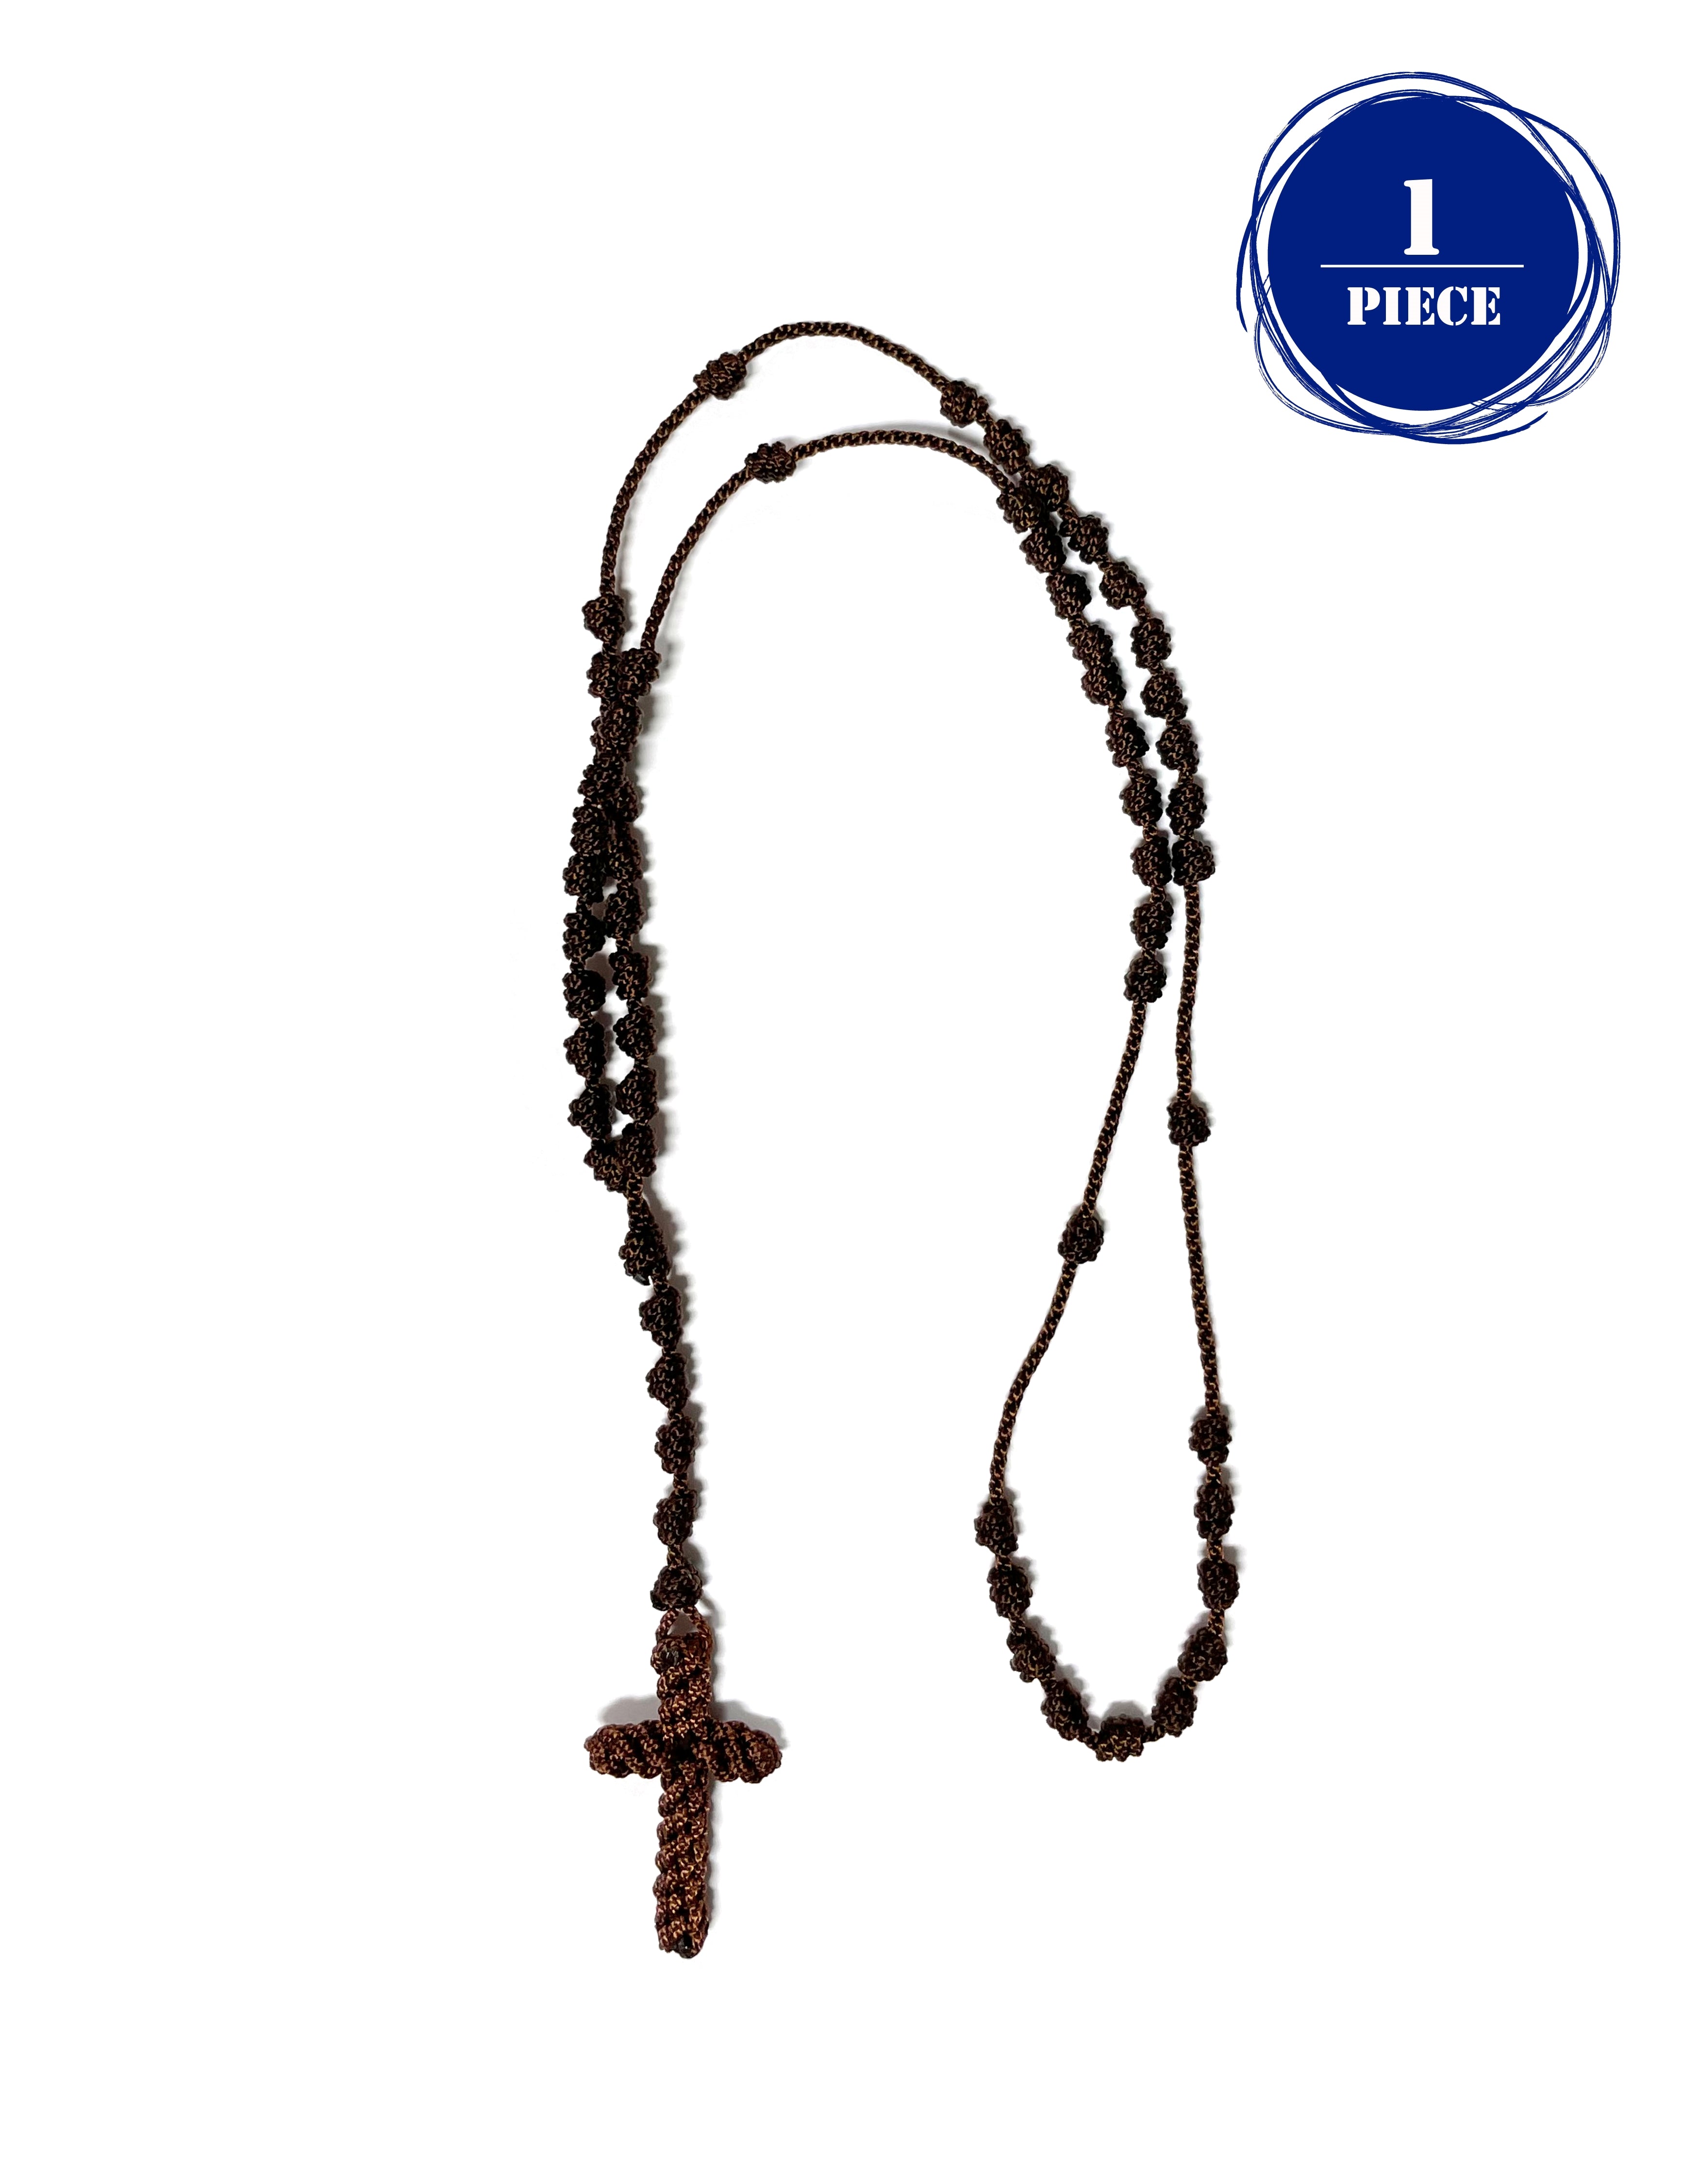 Knotted rosary - cord rosary, thread rosary - Handmade Rosary. Rosarios de cordón anudado y cruz tejida